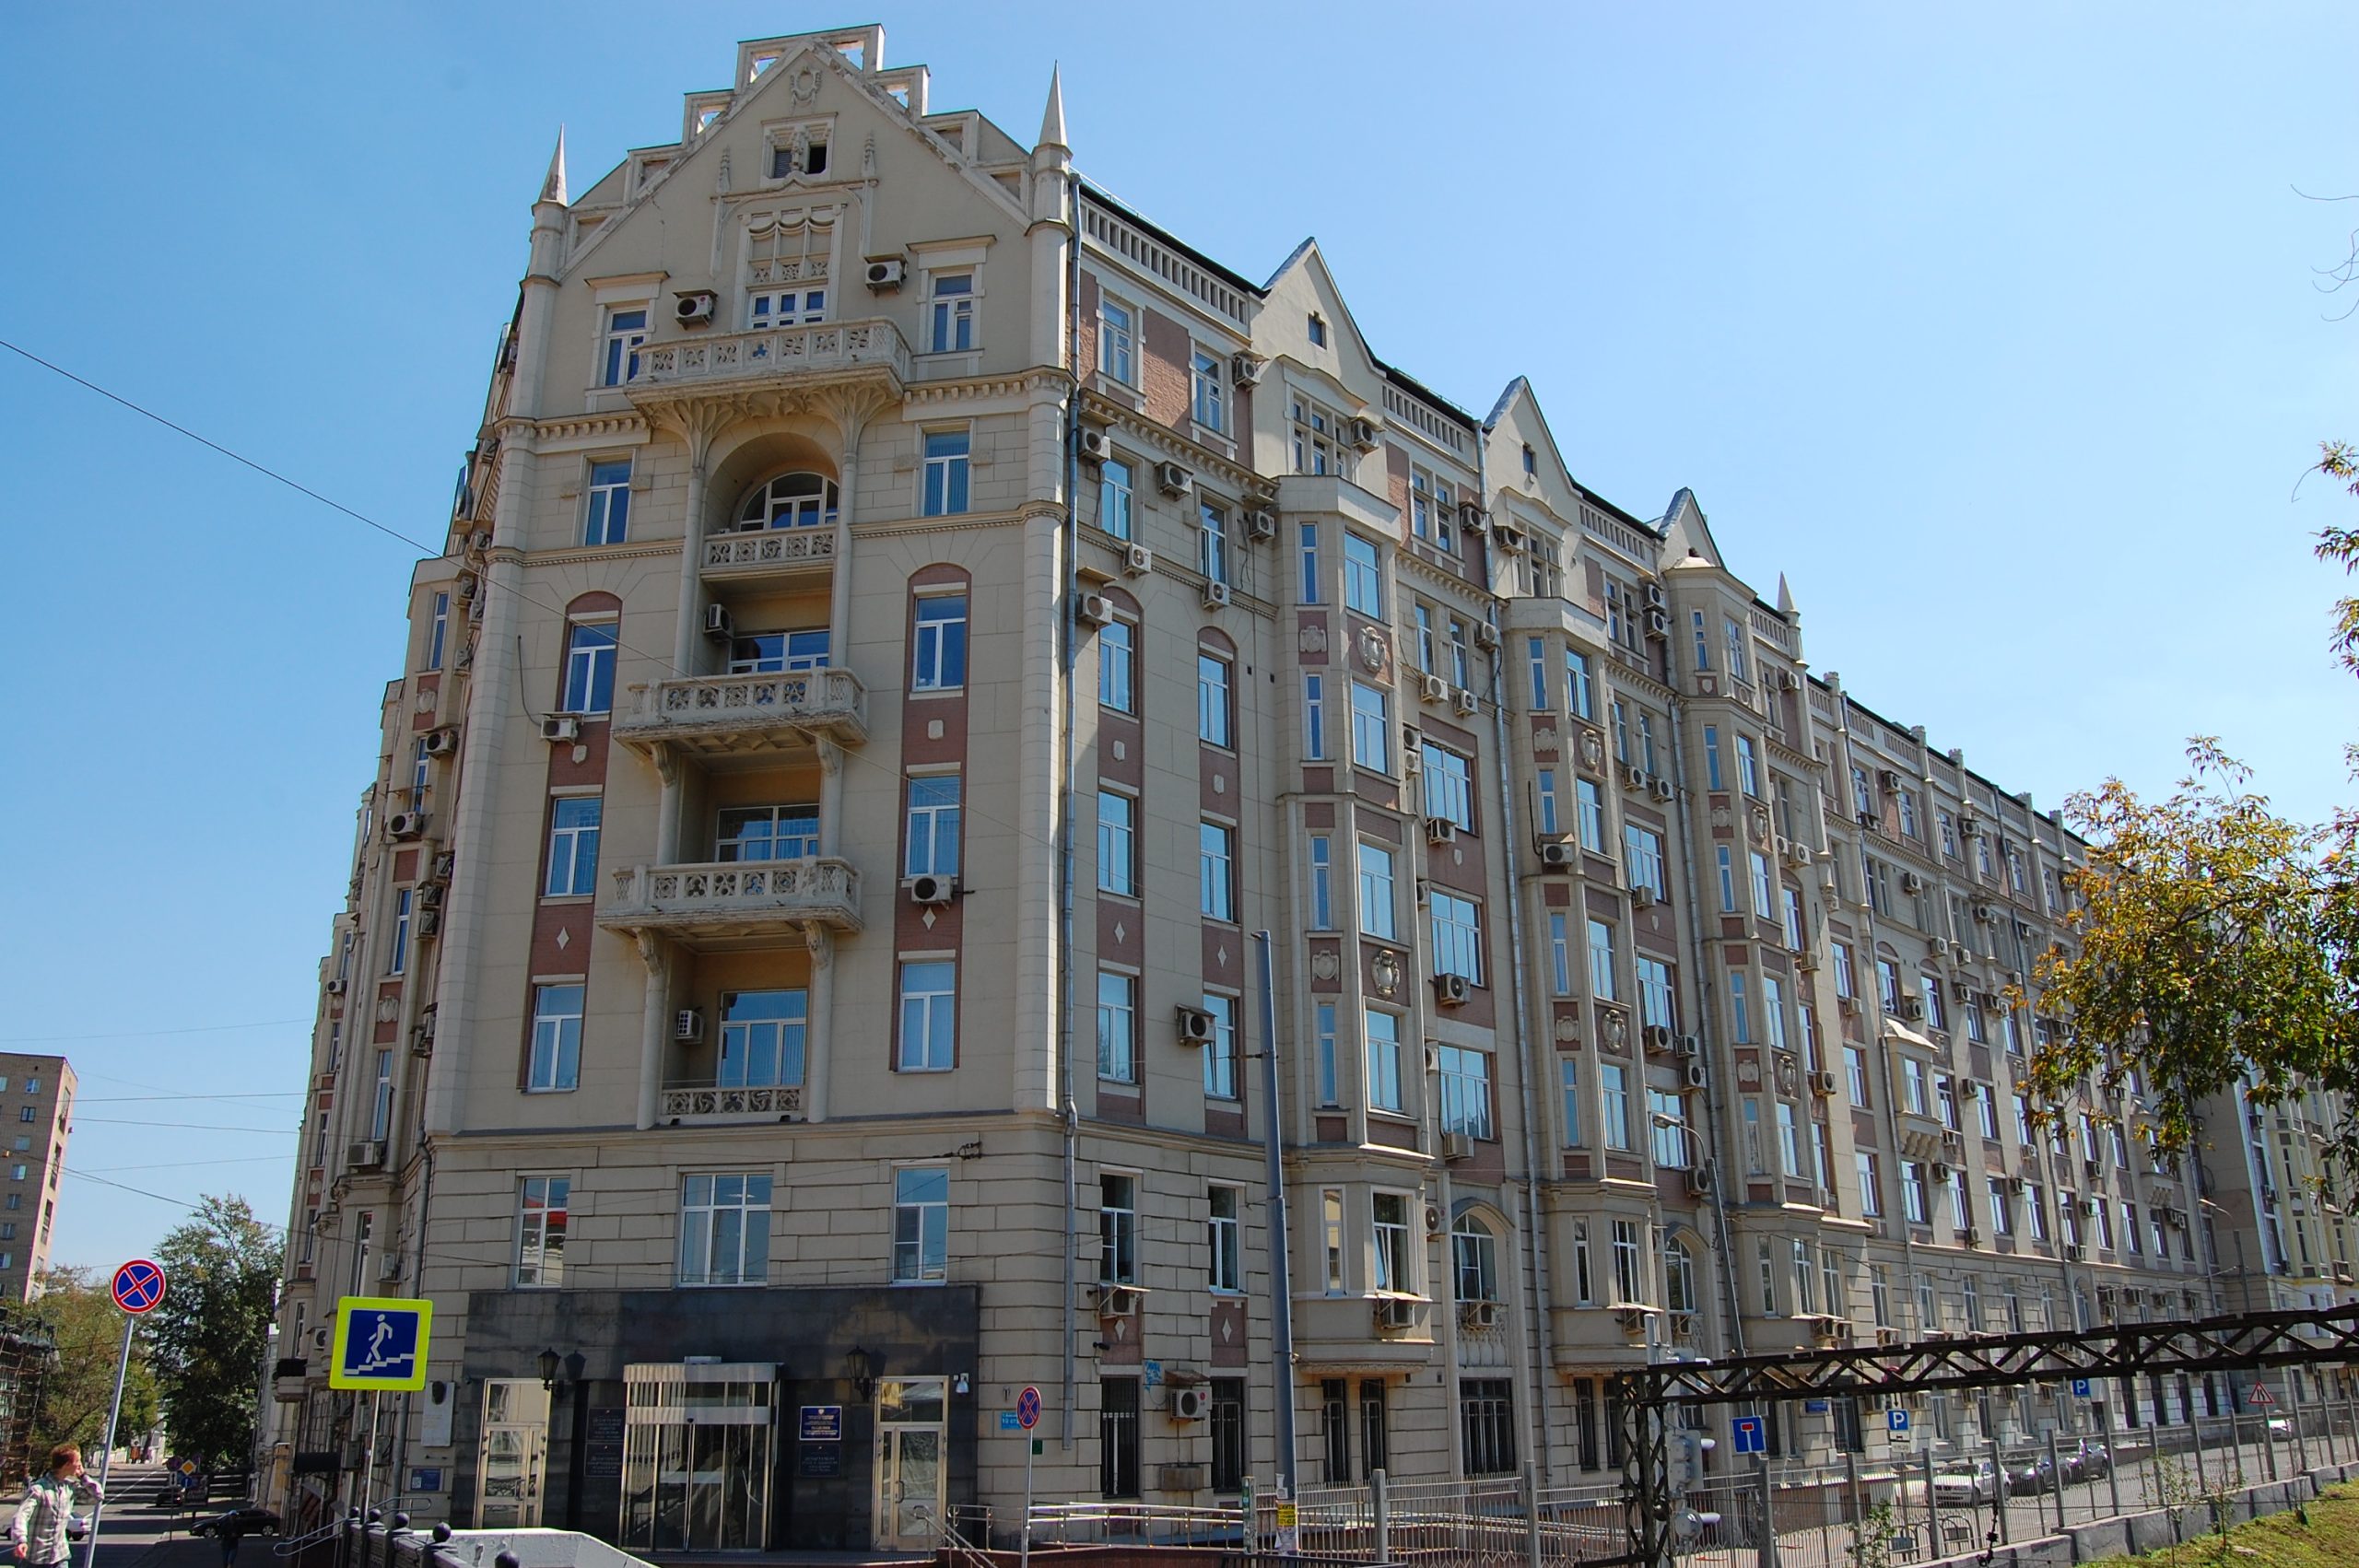 Новая Басманная, дом 10. Комната Фатьяновых была нашестом этаже, окнами на Курский вокзал. Фото: Wikipedia.org 